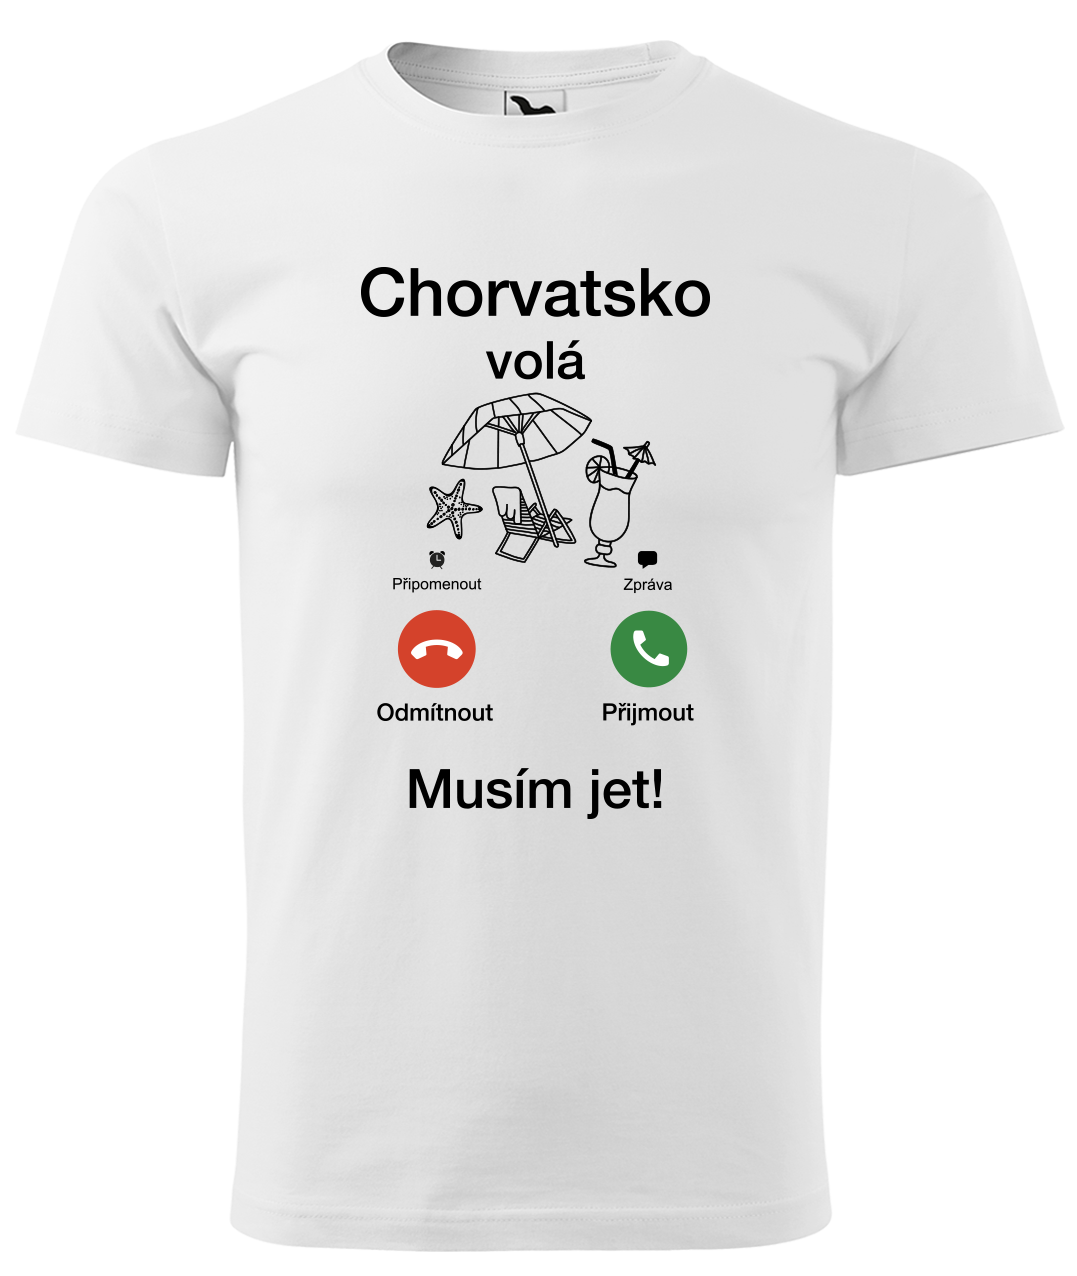 Dětské cestovatelské tričko - Chorvatsko volá - musím jet! Velikost: 4 roky / 110 cm, Barva: Bílá (00)